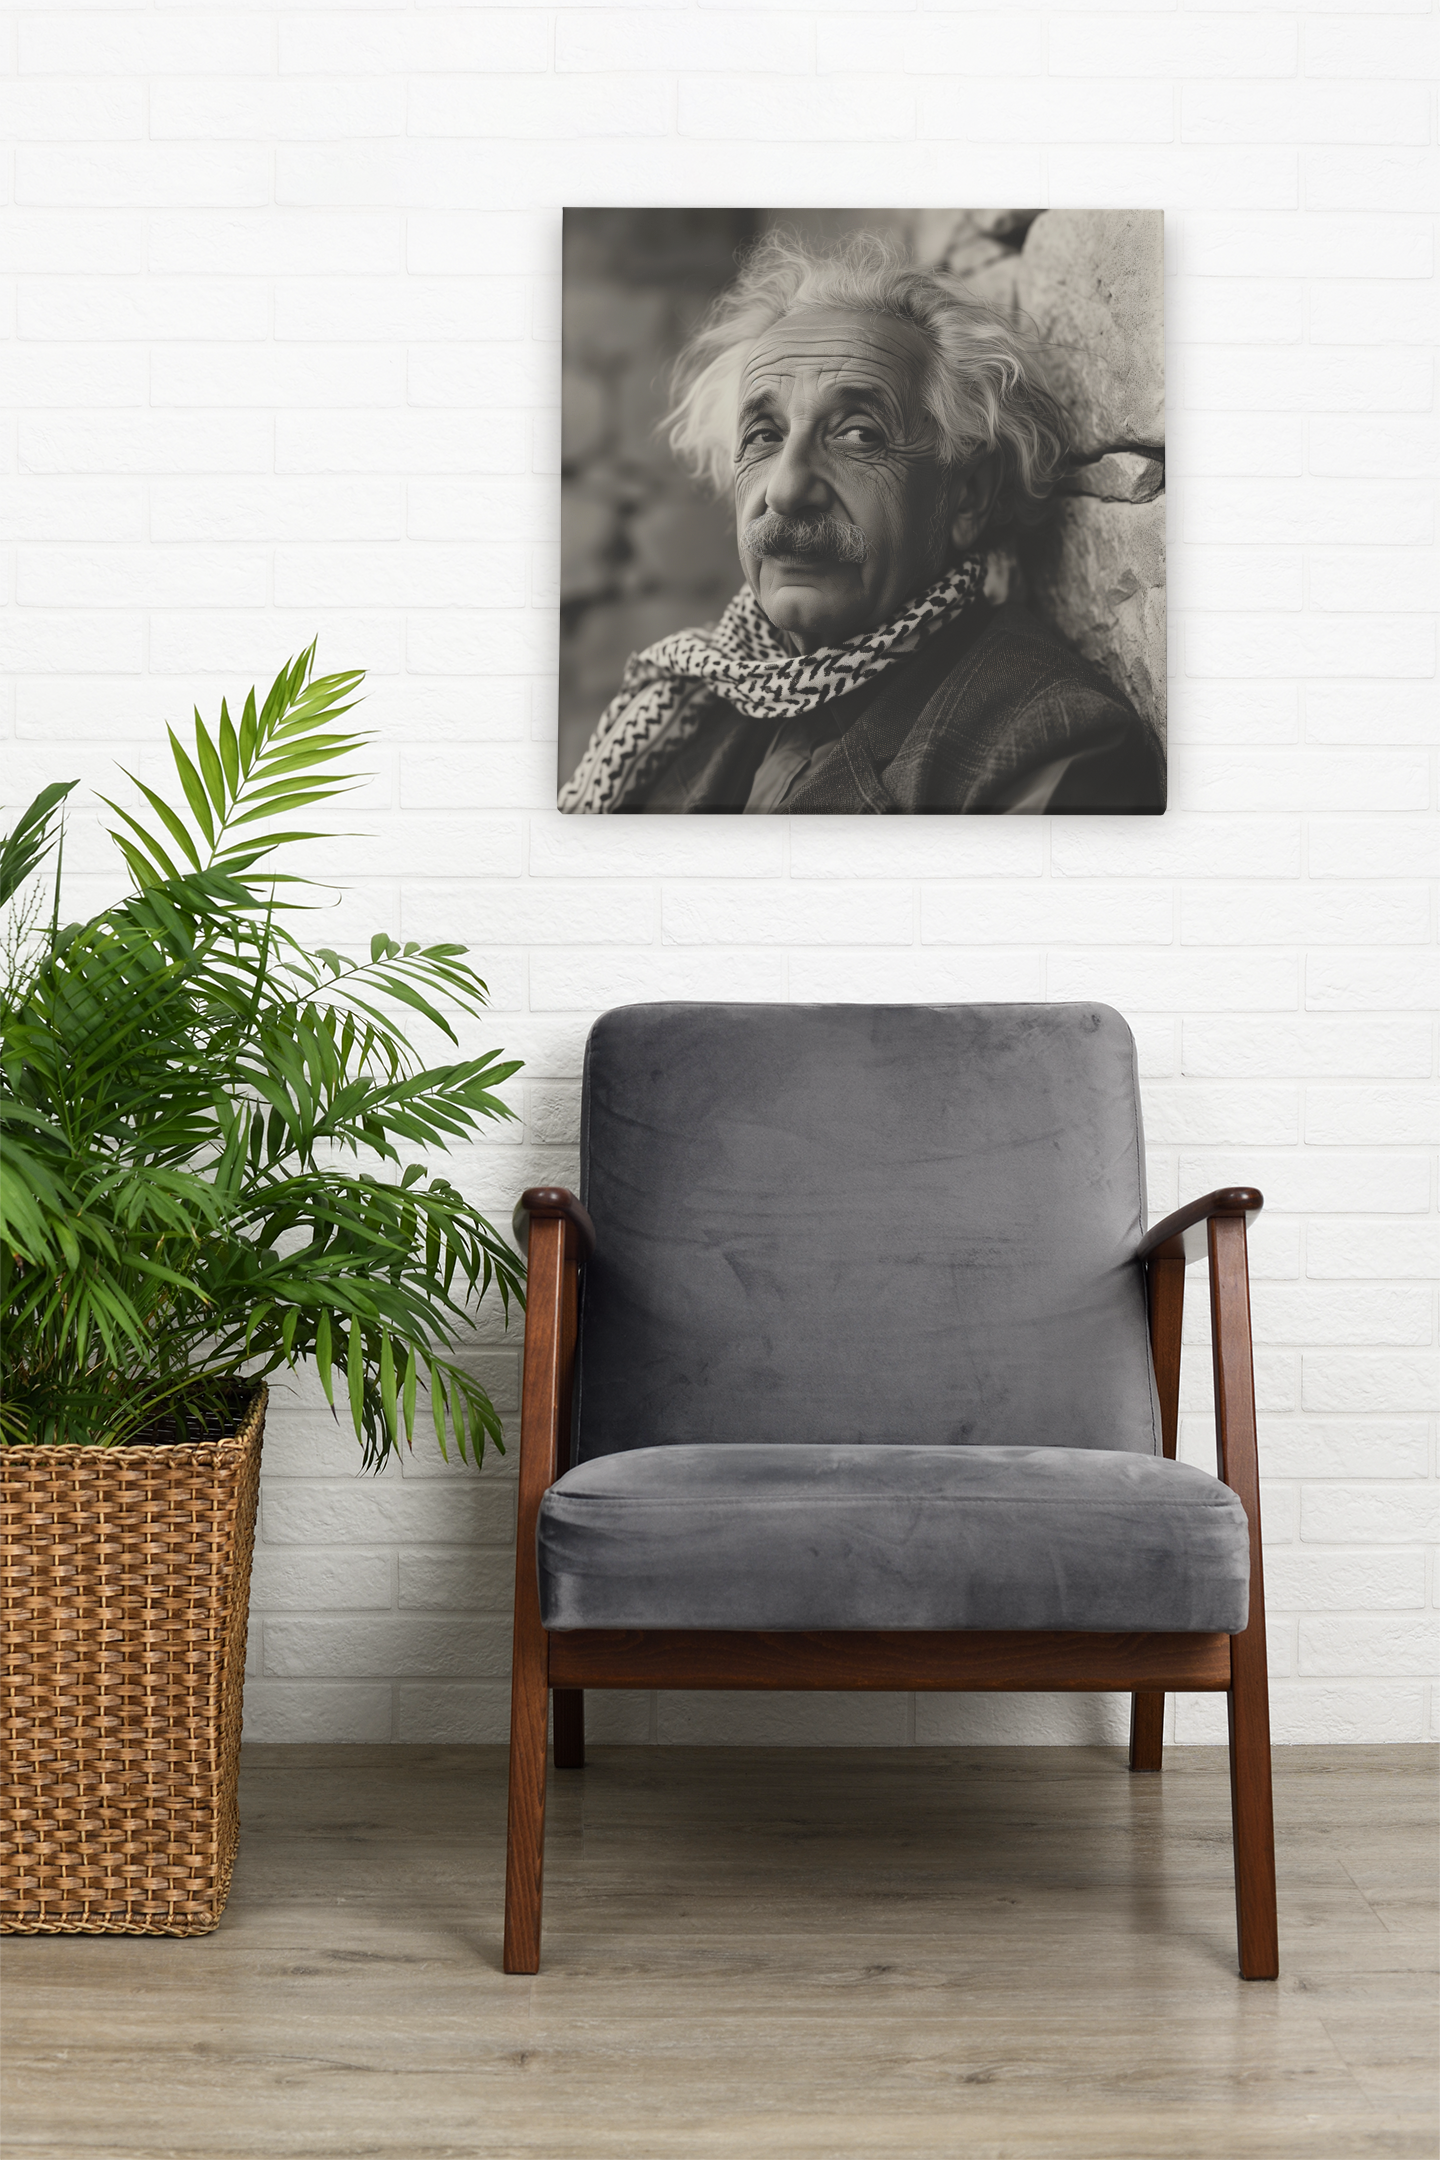 Einstein's Vision: Bridging Worlds, Falasteeni Einstein, Palestinian Einstein, Keffiyeh, #Free Palestine, Wall Print Art, Home Decor, Poster